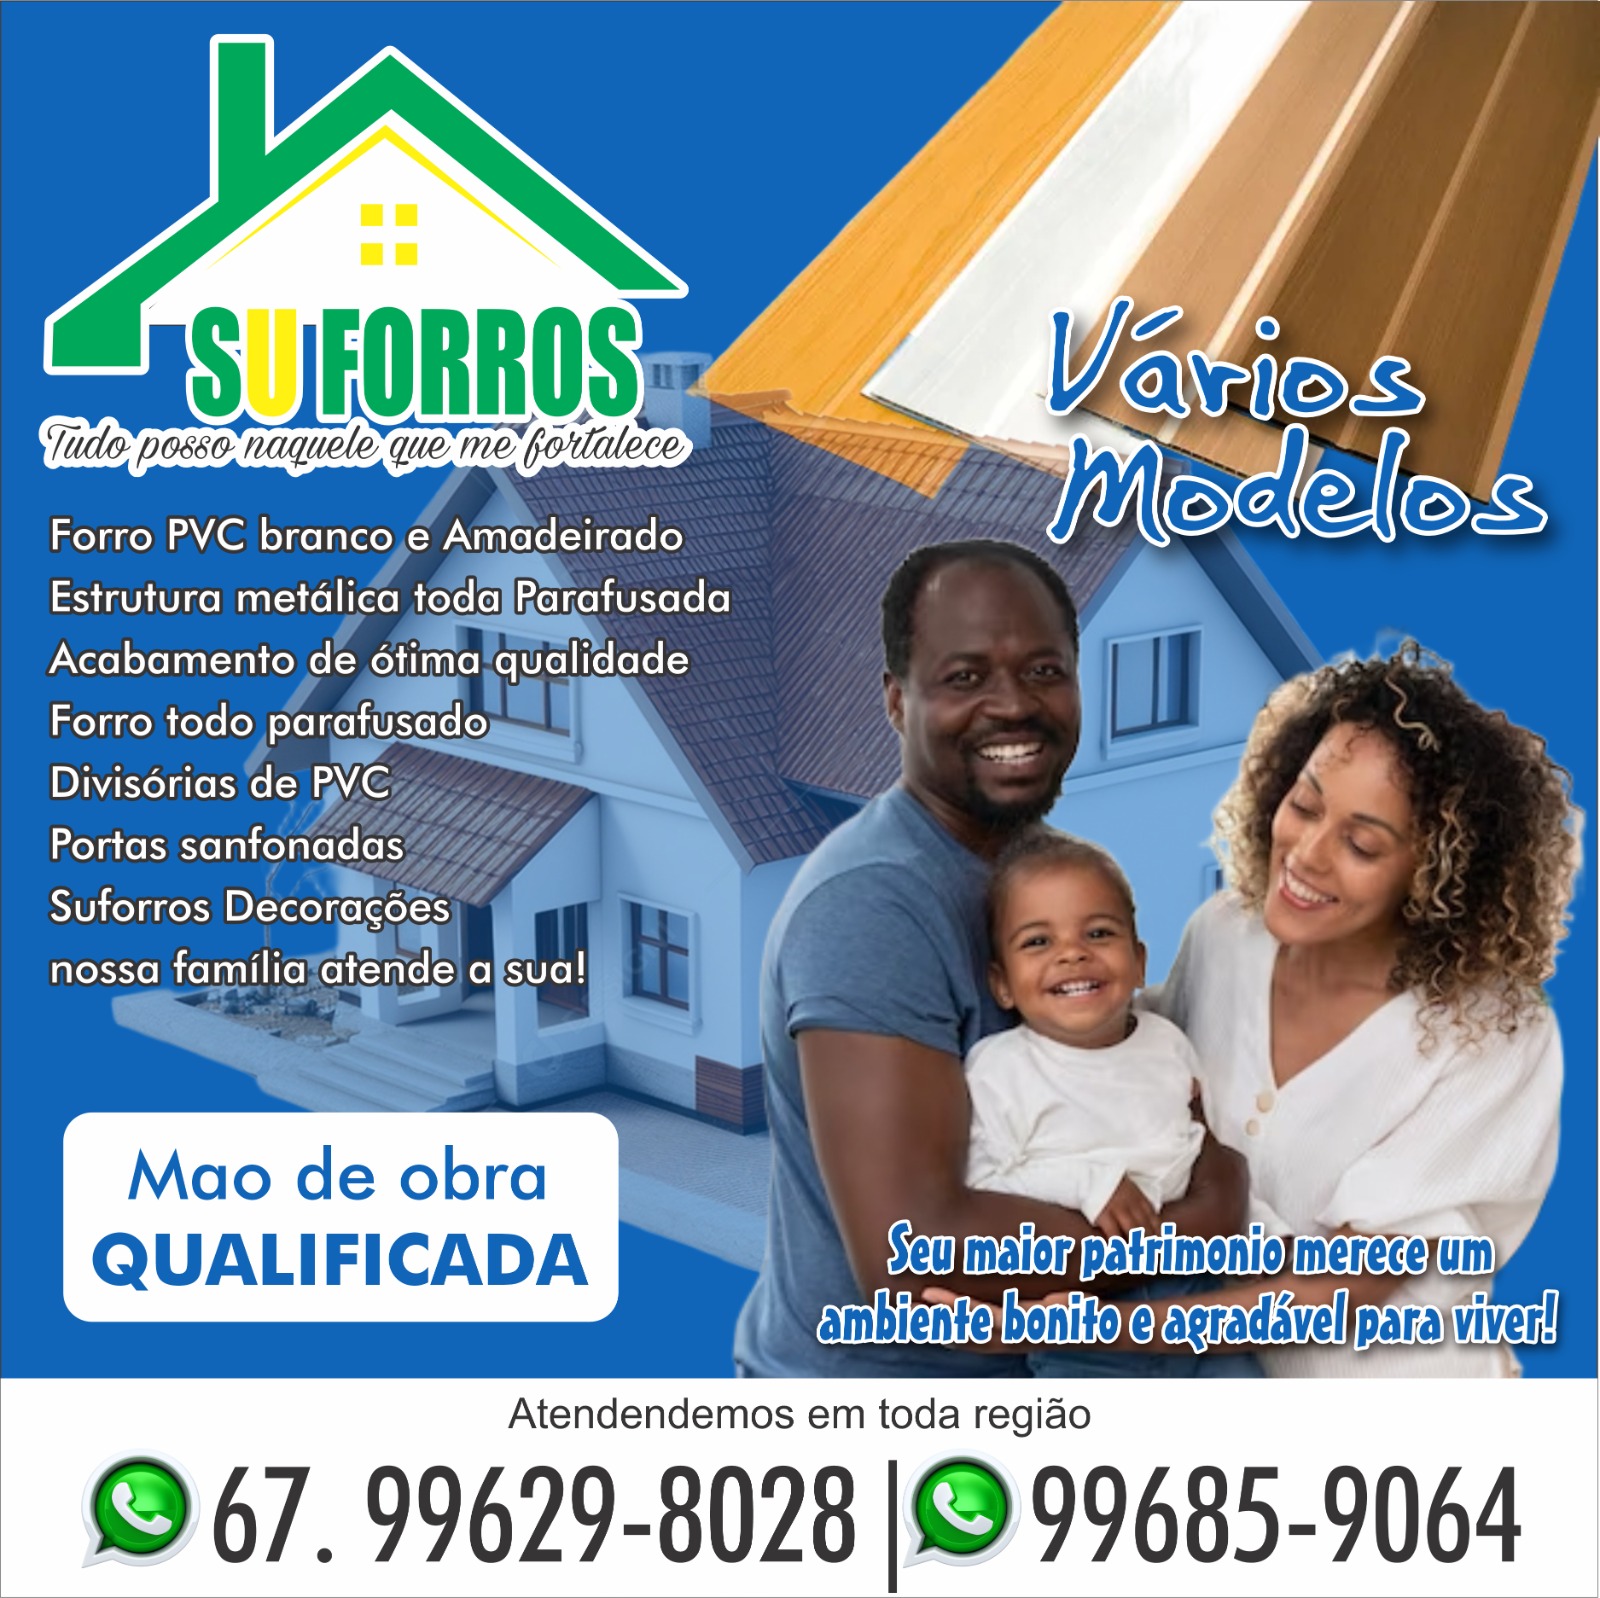 JCA ANAURILÂNDIA Publicidade 300x300